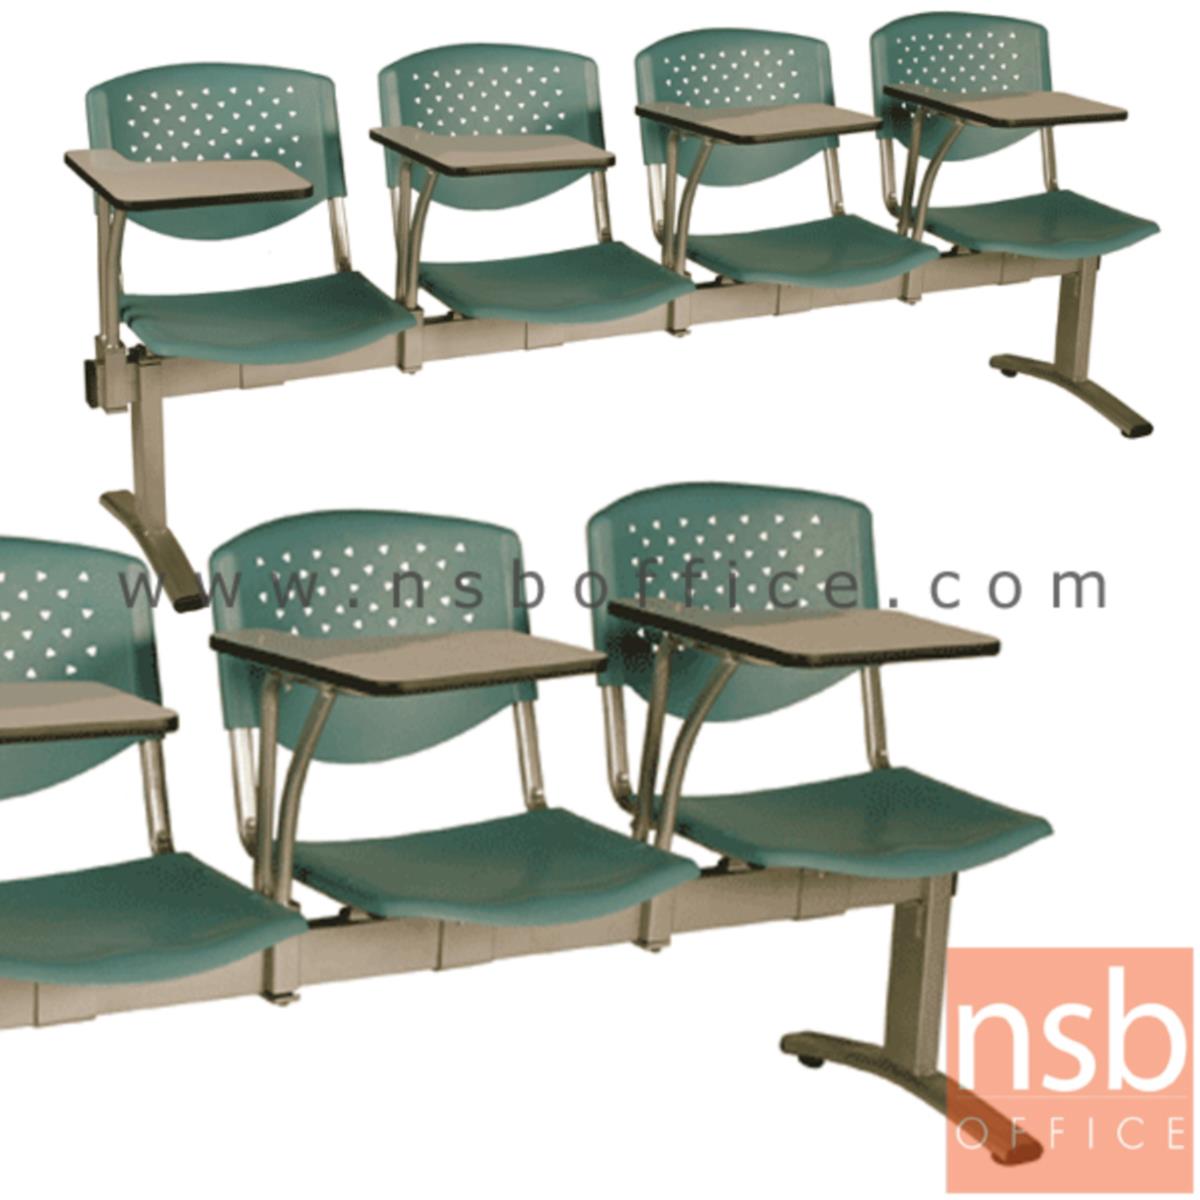 B17A019:เก้าอี้เลคเชอร์แถวเฟรมโพลี่ รุ่น D146 2 ,3 และ 4 ที่นั่ง ขาเหล็กพ่นสีเทา